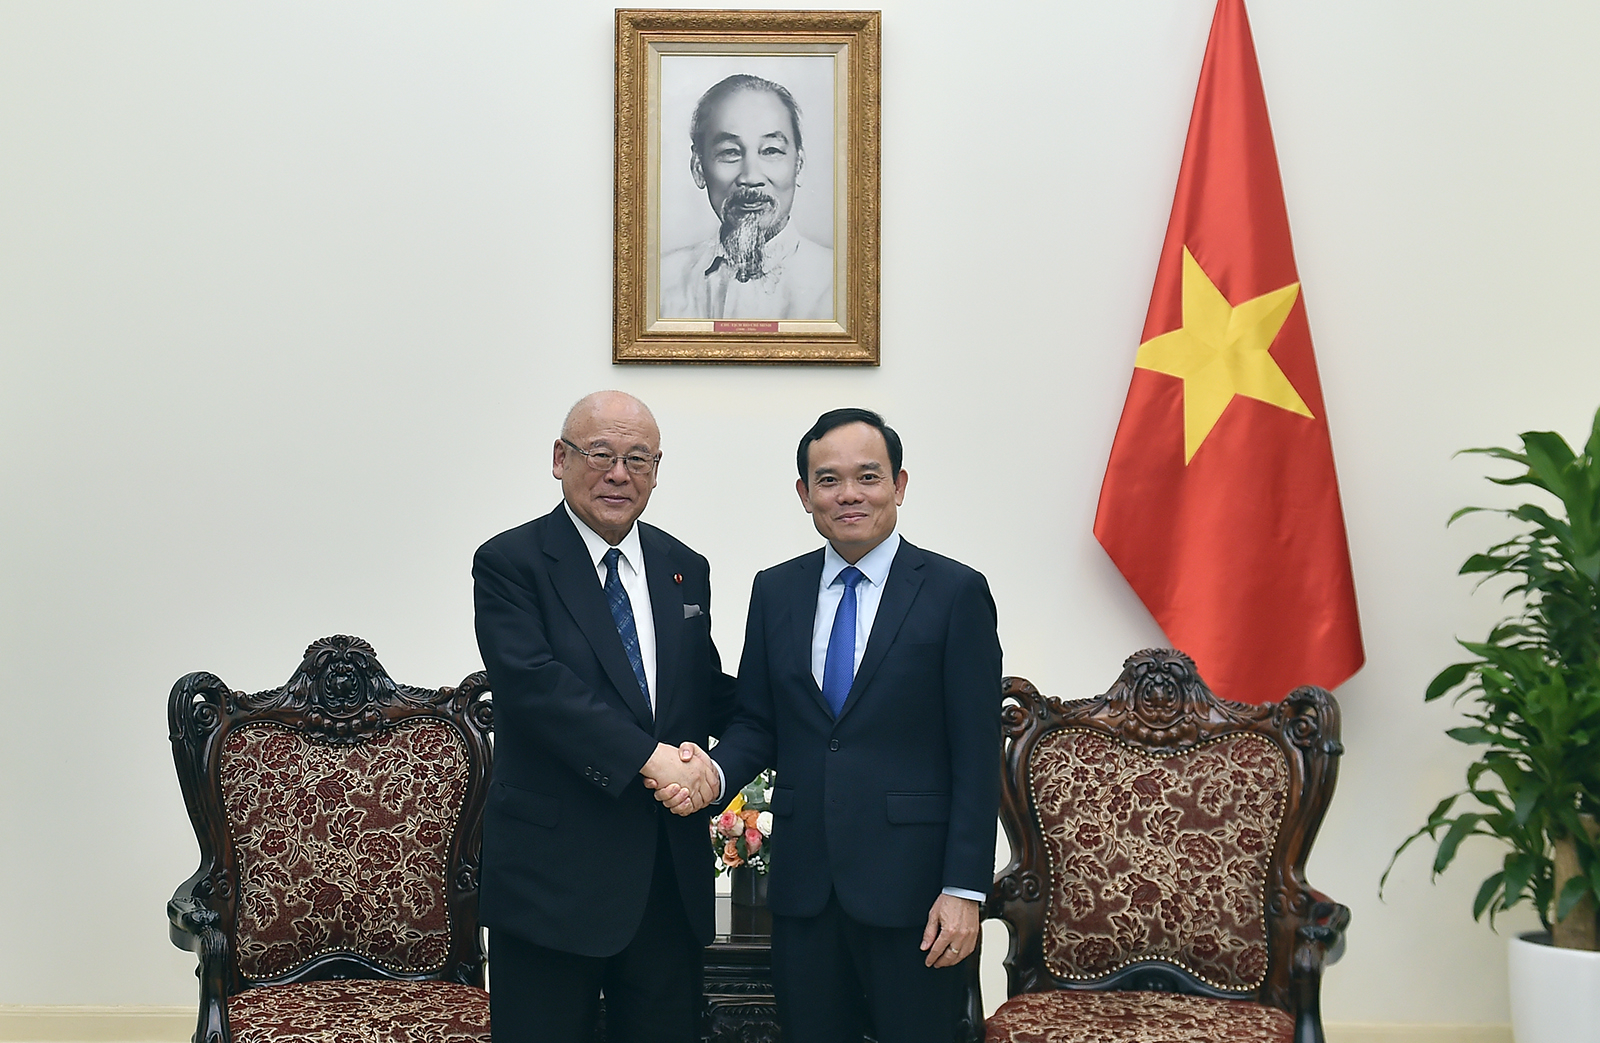 Chính phủ Việt Nam quyết tâm tháo gỡ vướng mắc liên quan đến Dự án Trường Đại học Việt-Nhật